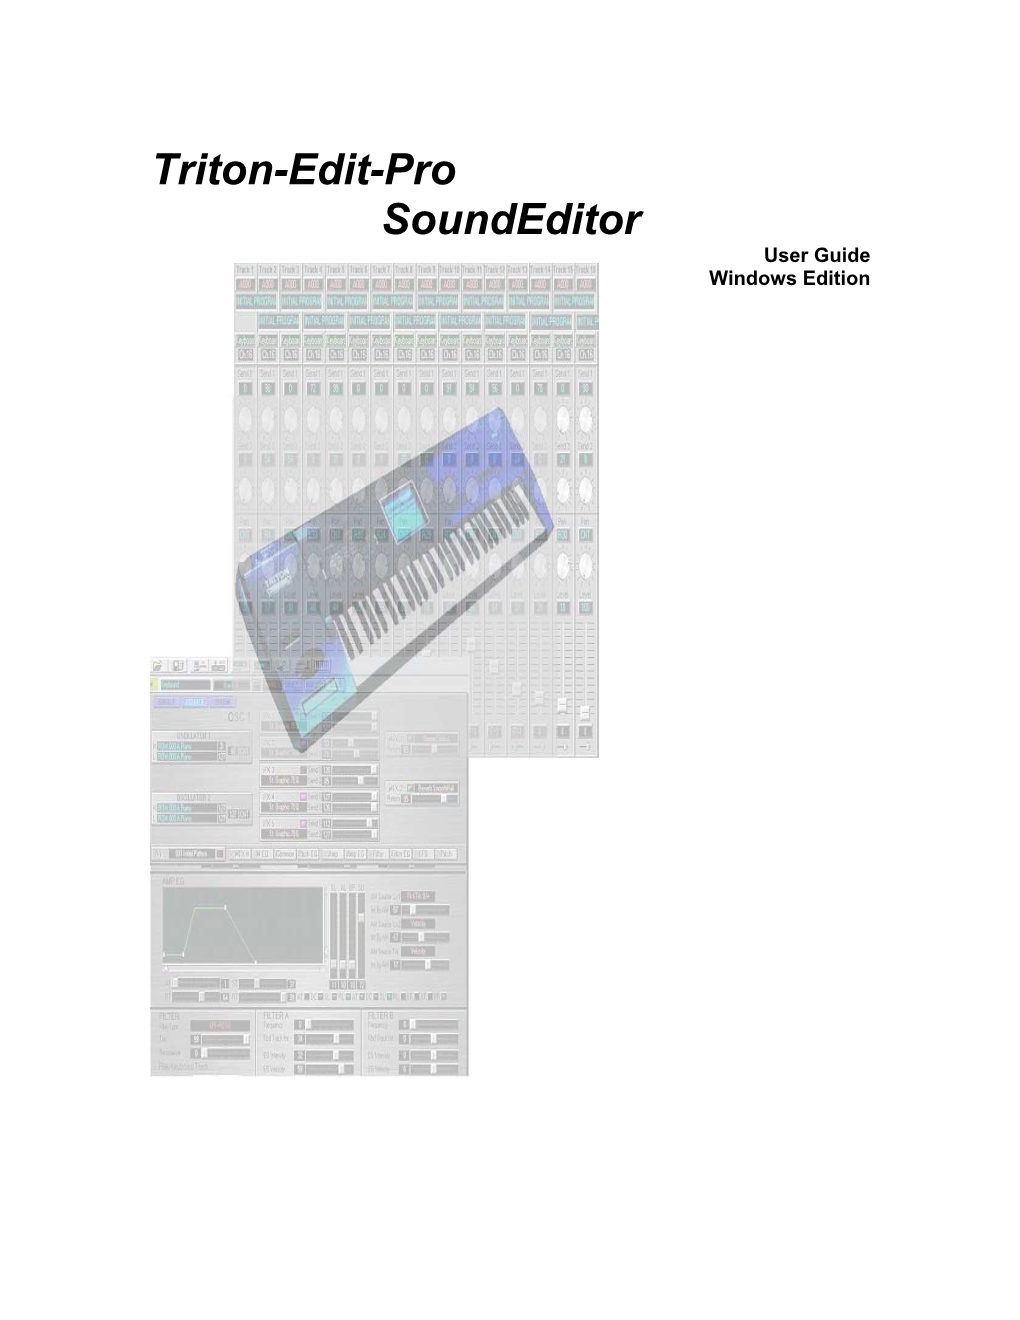 Triton-Editopro Tutorial